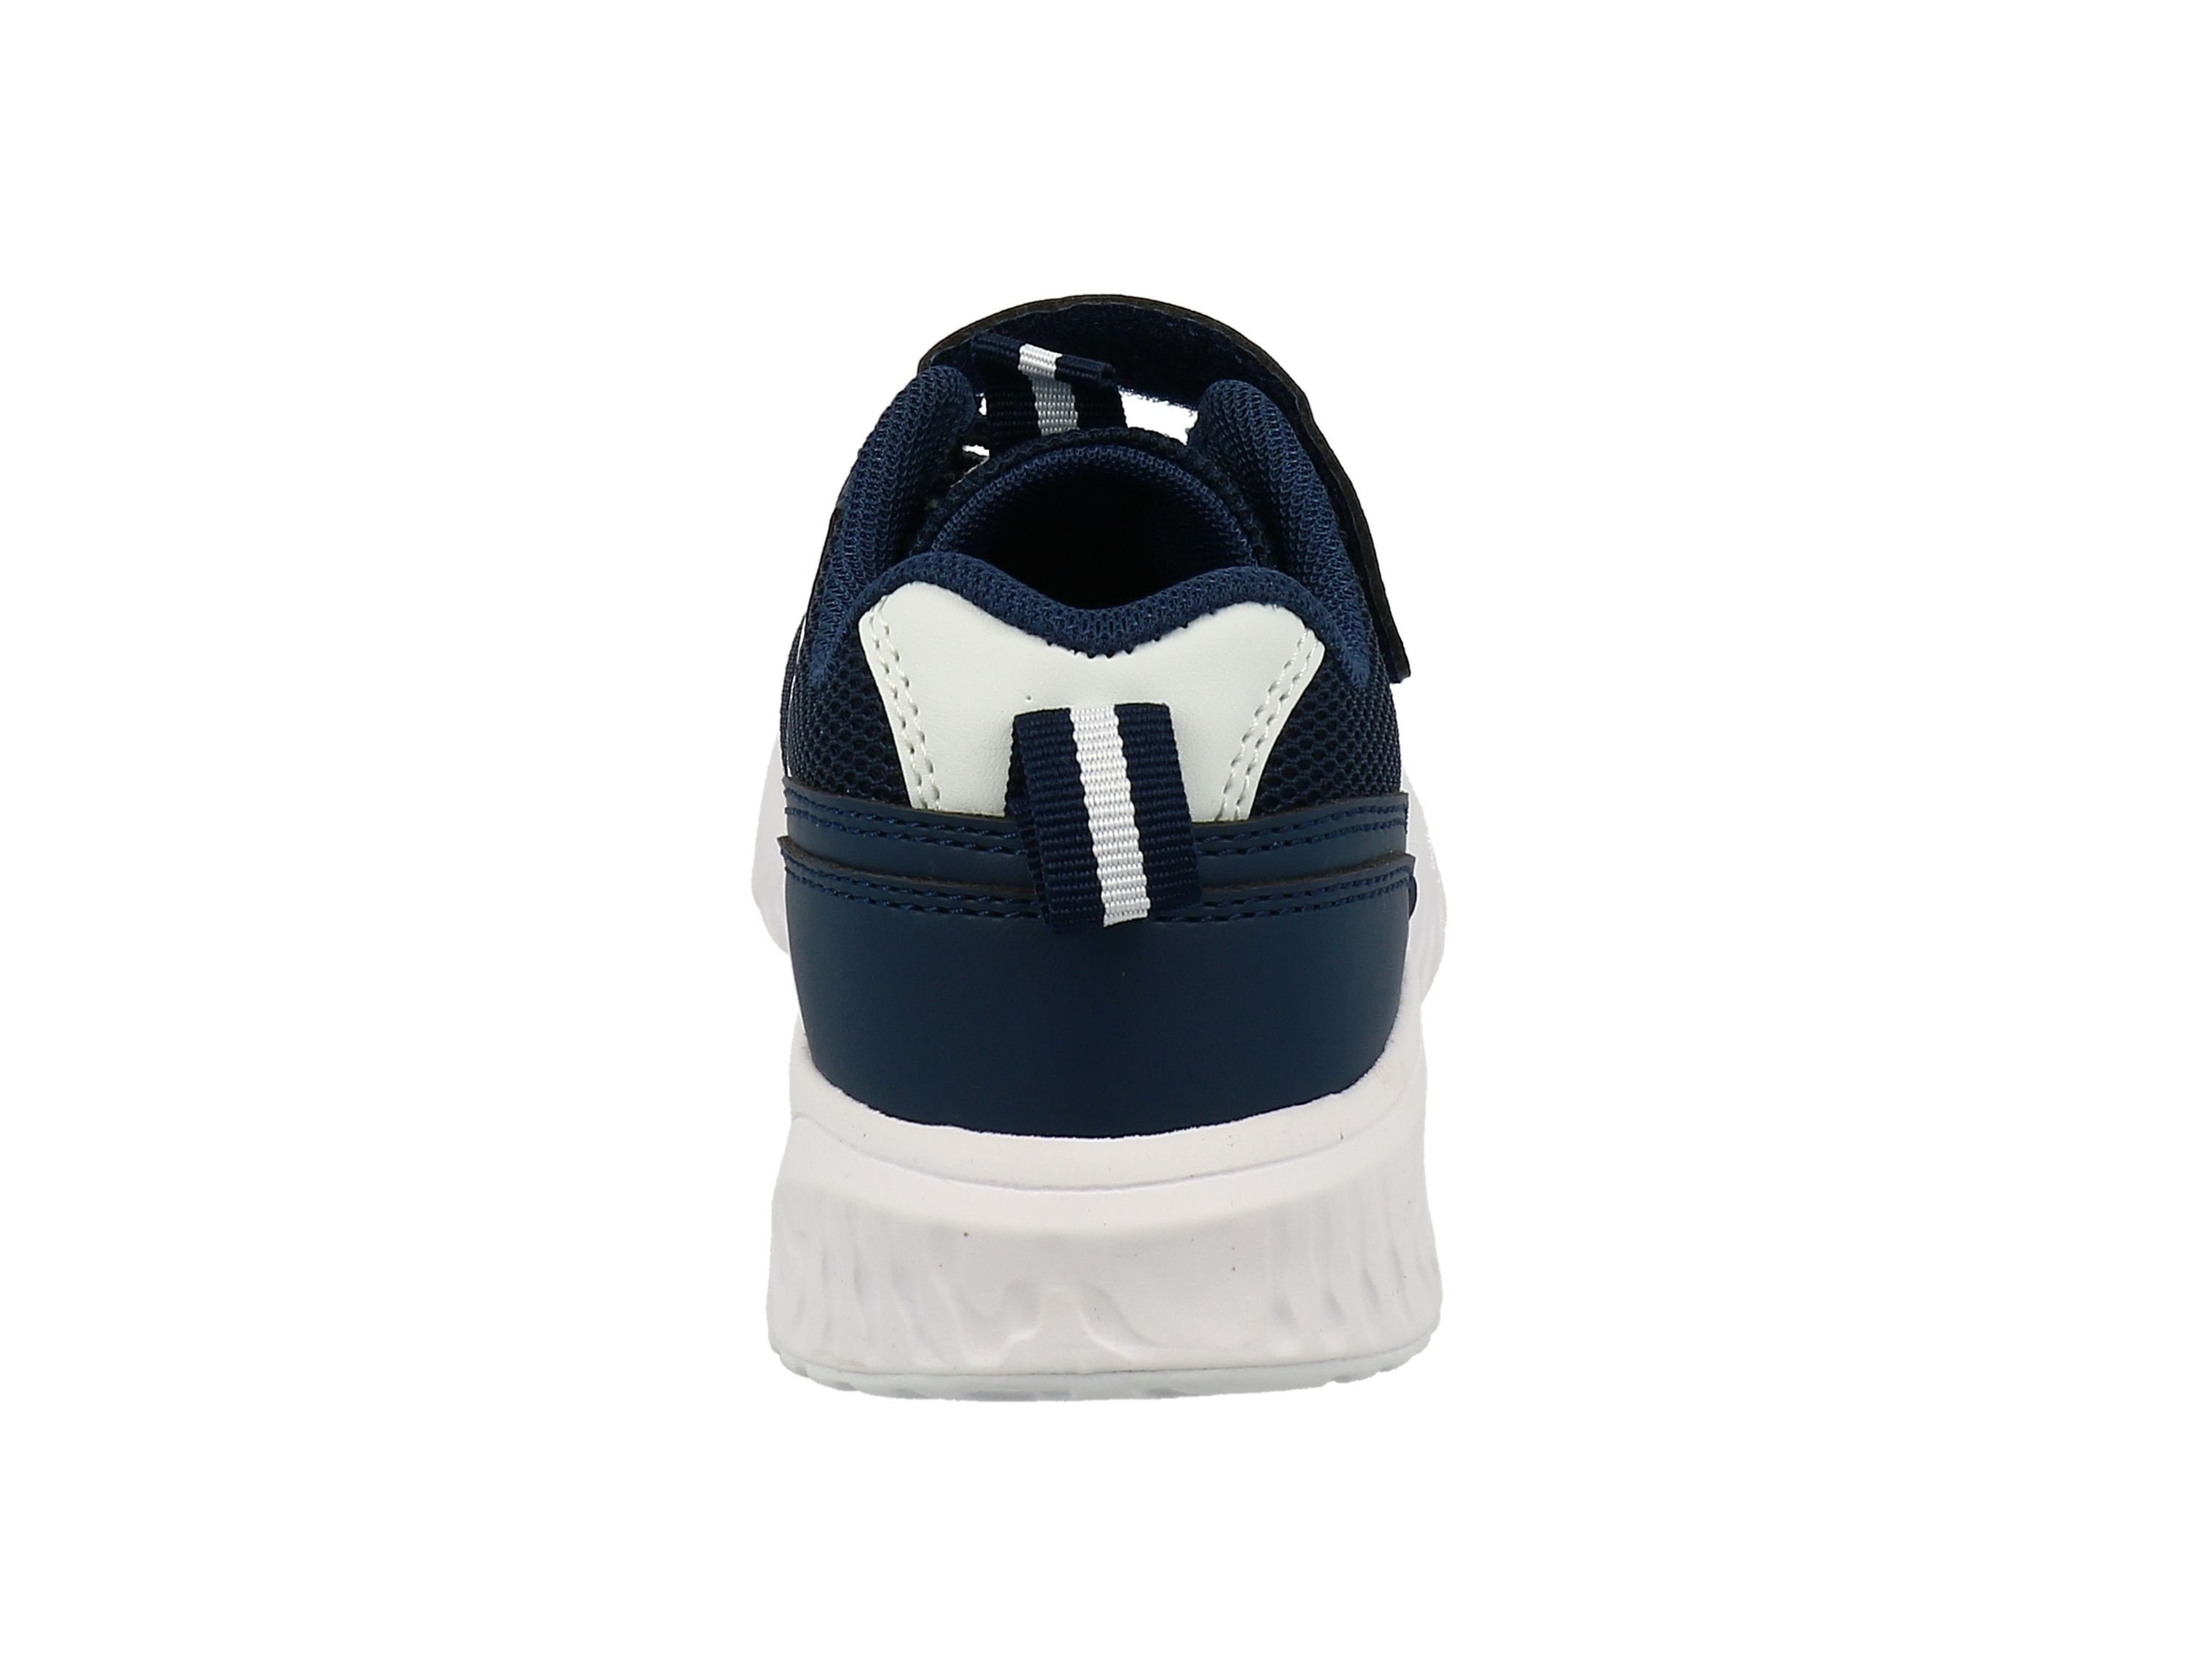 3274601 Tom TOM Kinder TAILOR Farben knallige Schnürhalbschuhe navy-white Tailor sportlich Sneaker